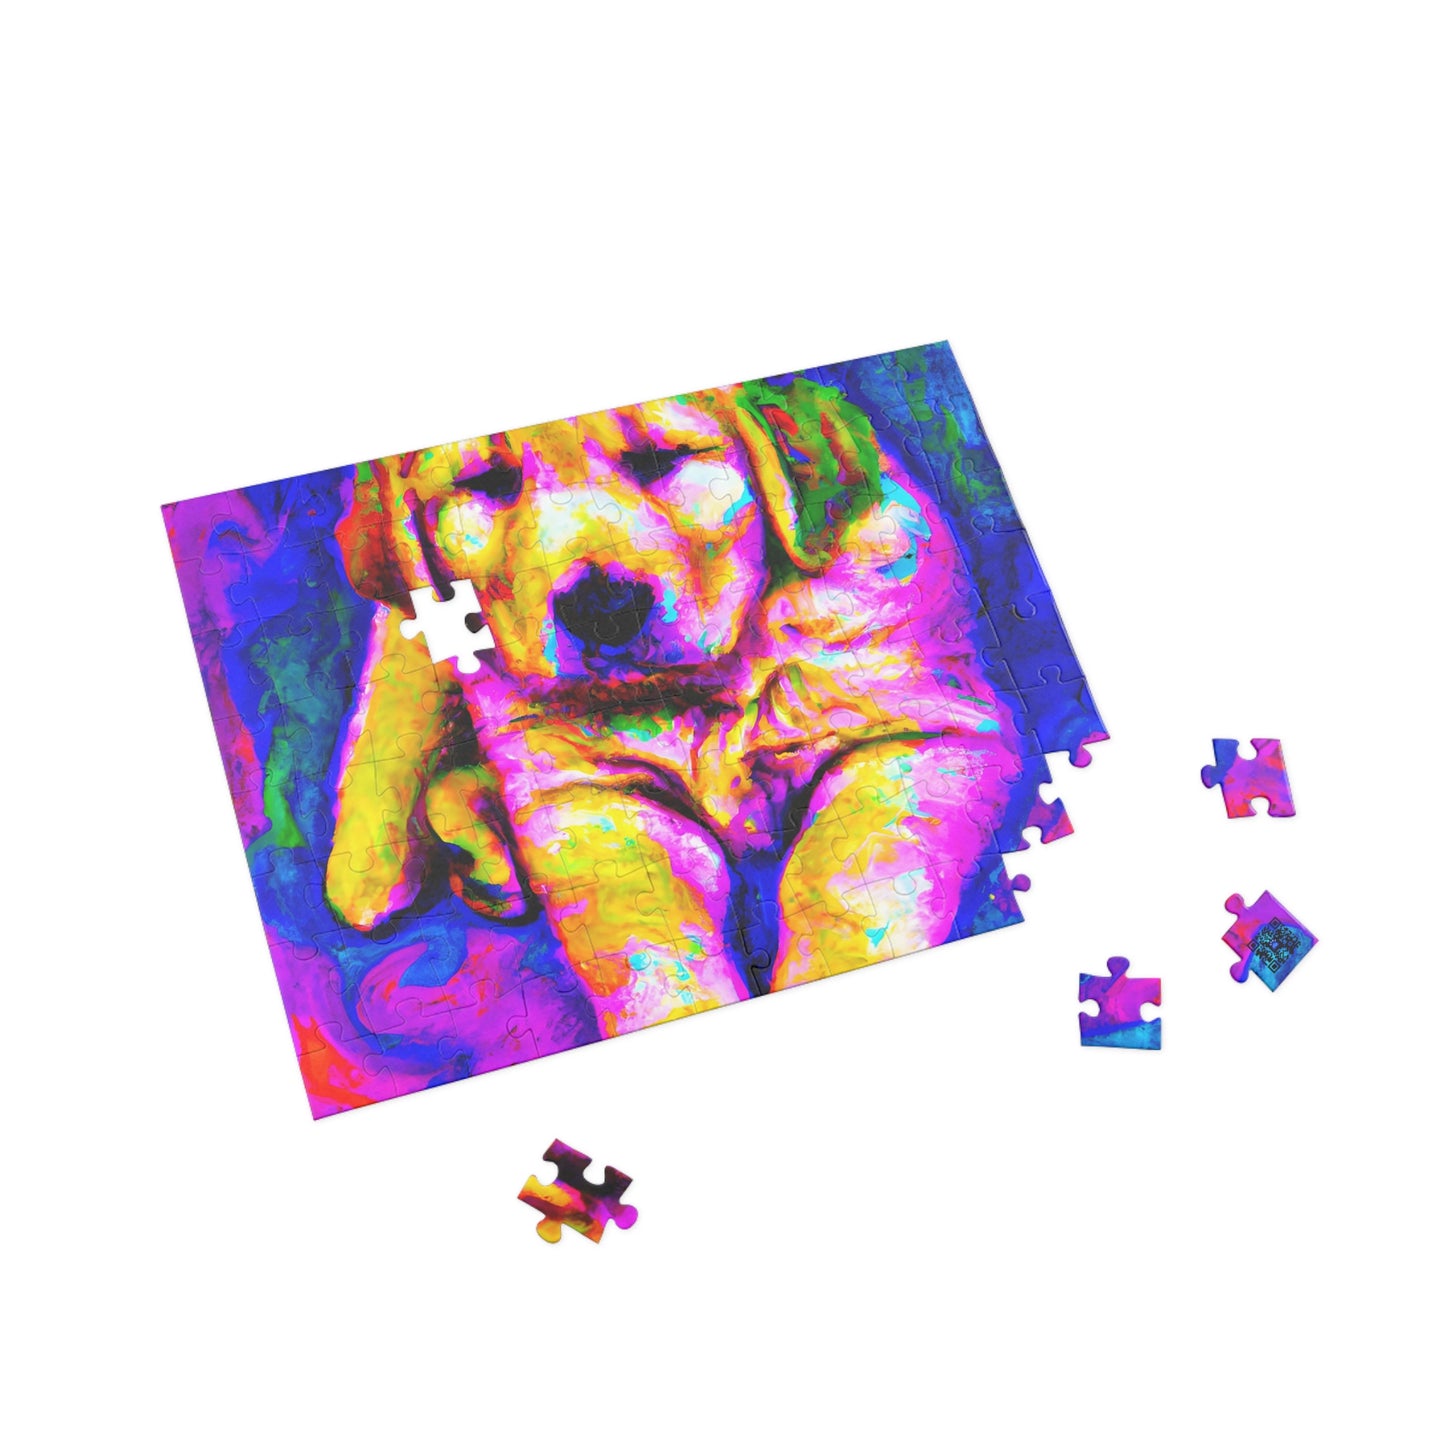 Jacques Chateaupuzzlant - Golden Retriever Puppy - Puzzle